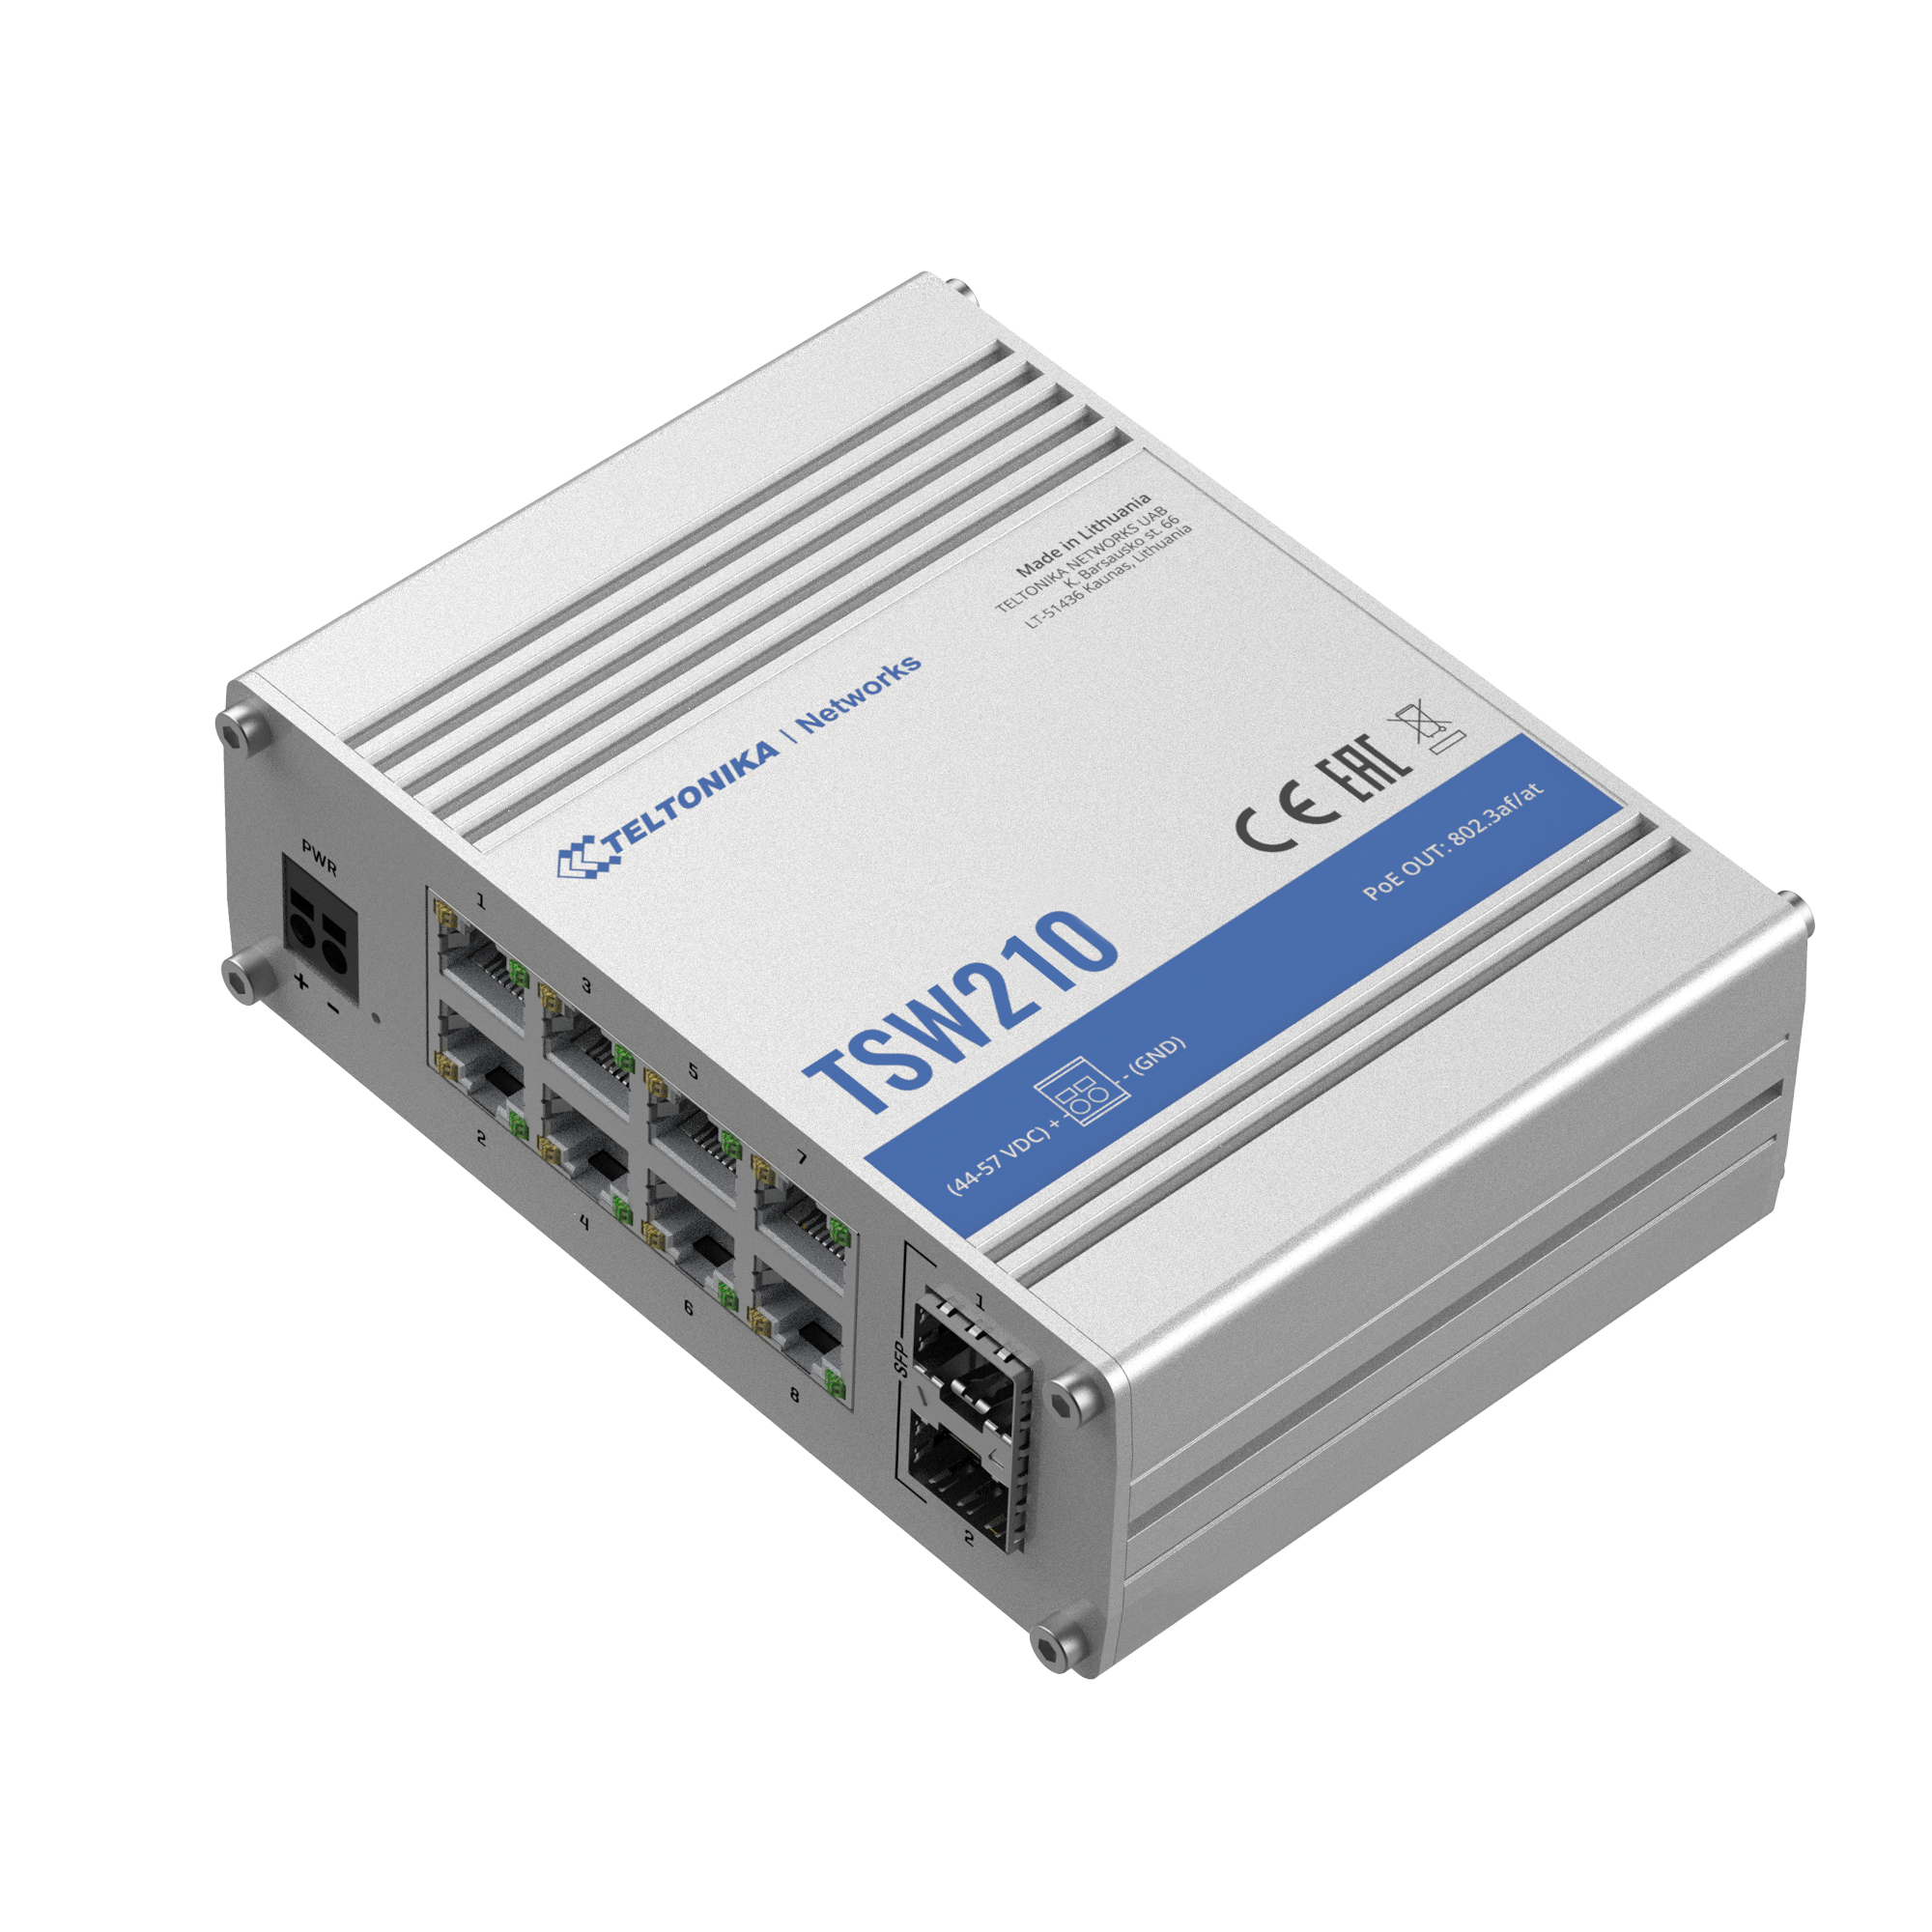 TSW210 - Teltonika Switches. 5 x Gigabit Ethernet ports